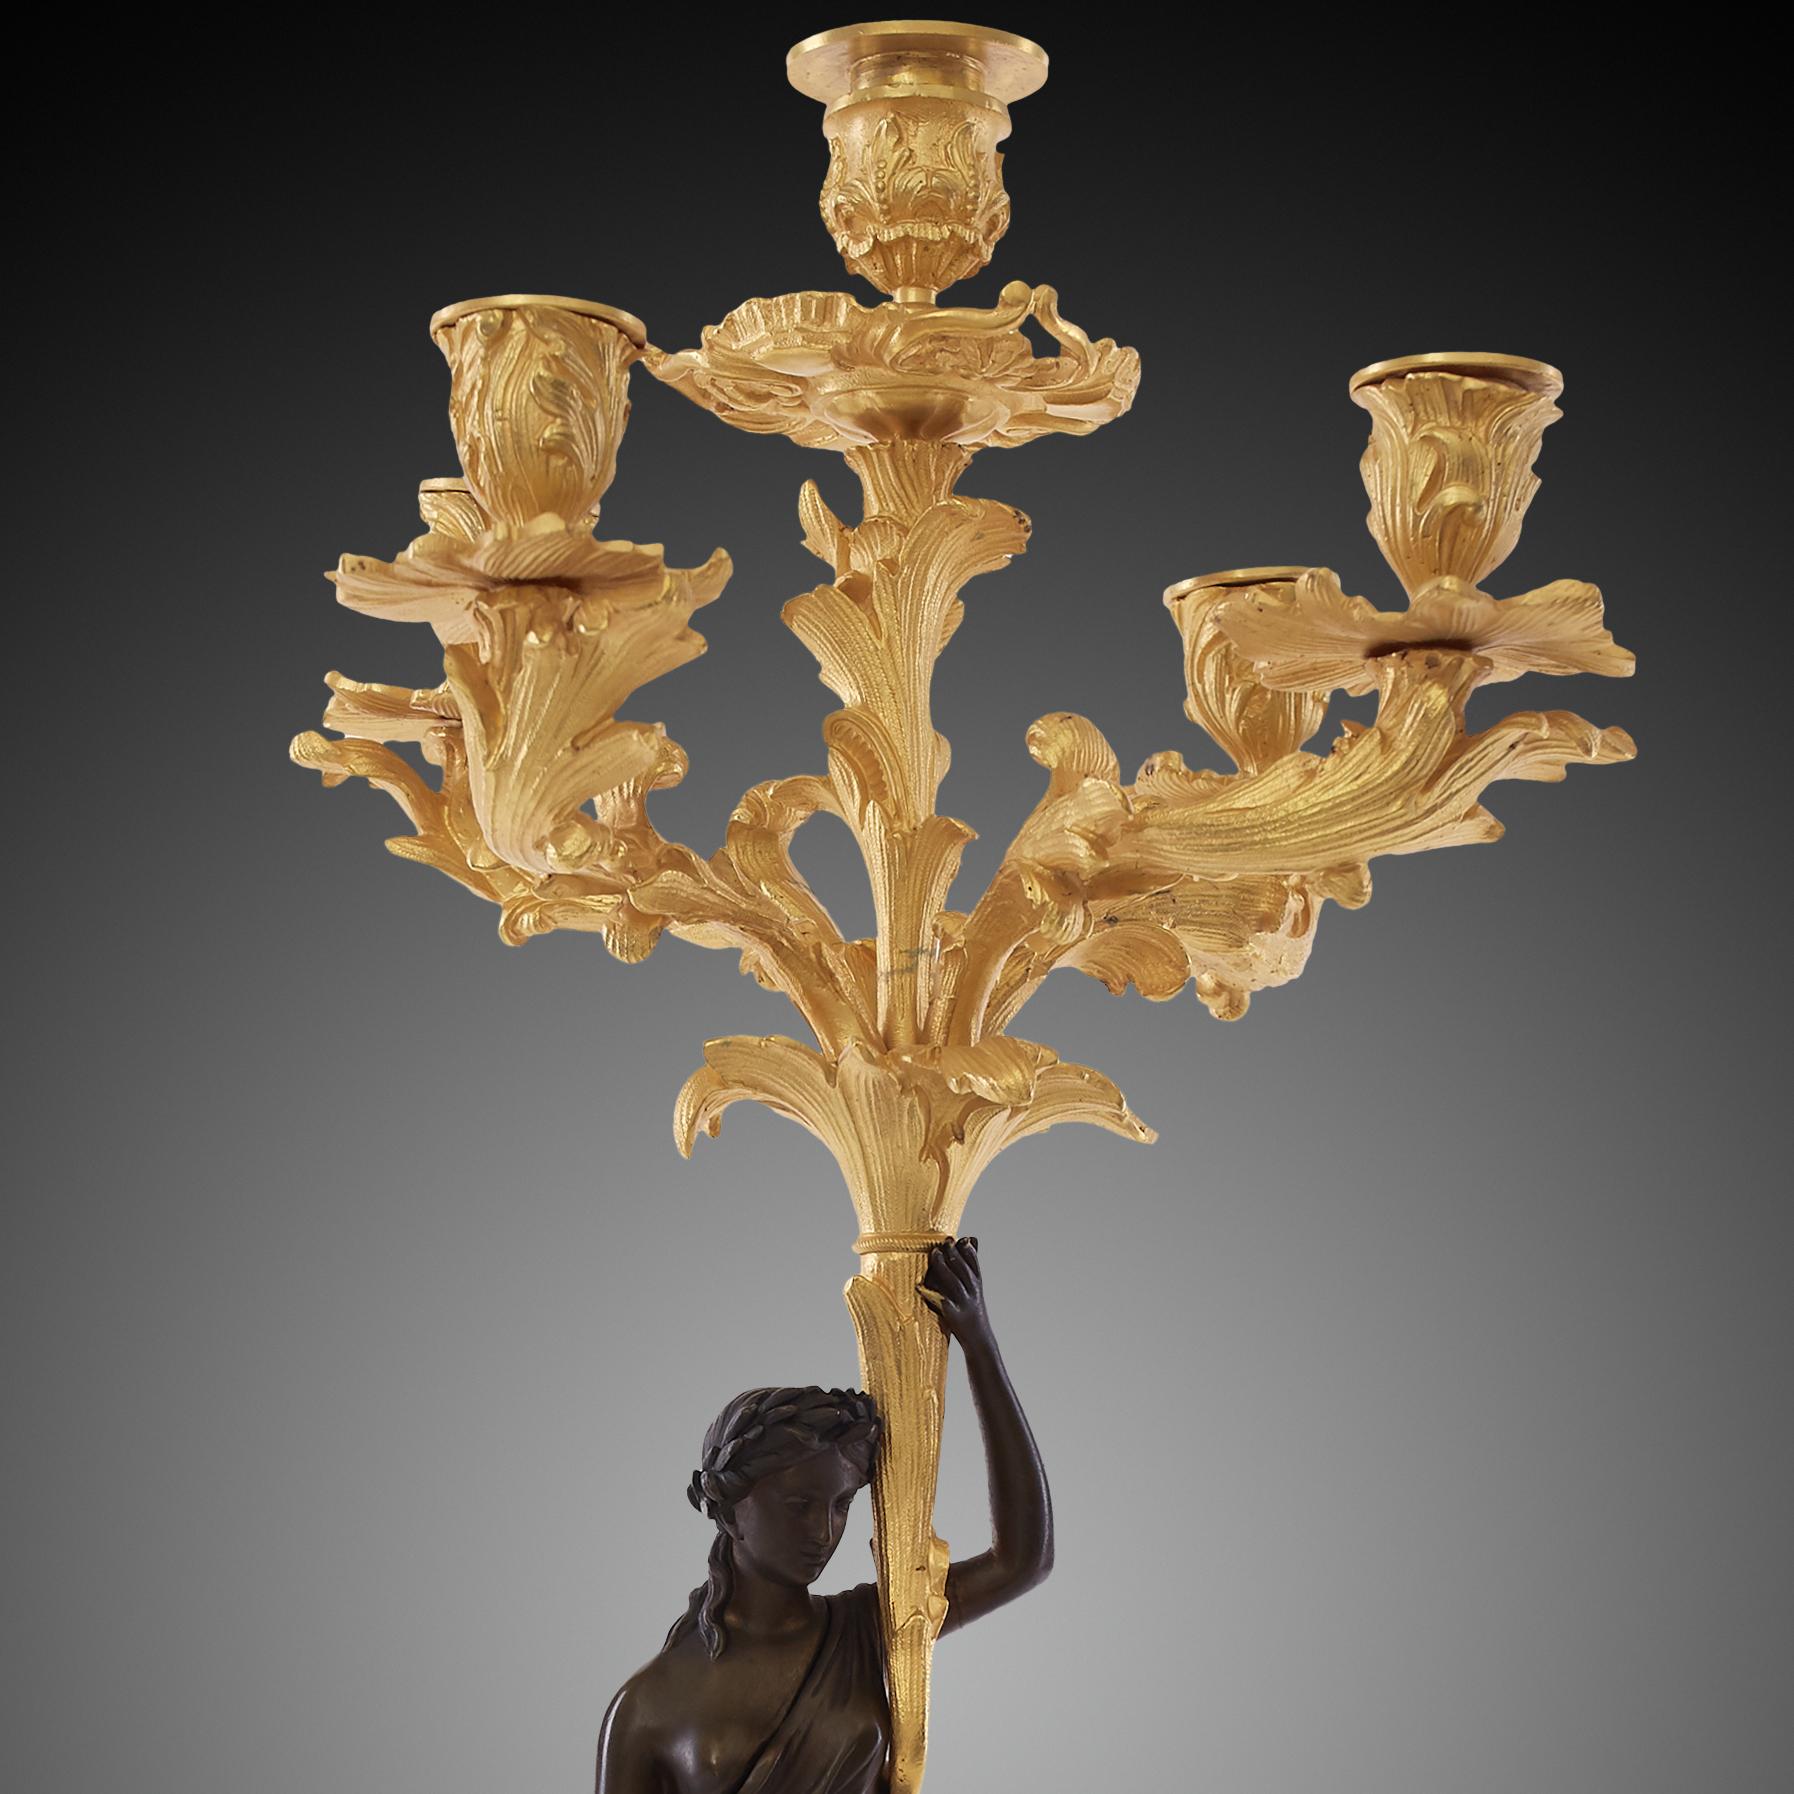 Es handelt sich um ein Paar vergoldeter Kandelaber, die vom Stil Ludwigs XVI. inspiriert sind - einem Stil, der seinen Ursprung in Frankreich hat. Der Hauptschaft der Kandelaber ist aus weiblichen Statuen gefertigt. Im Gegensatz zu den übrigen